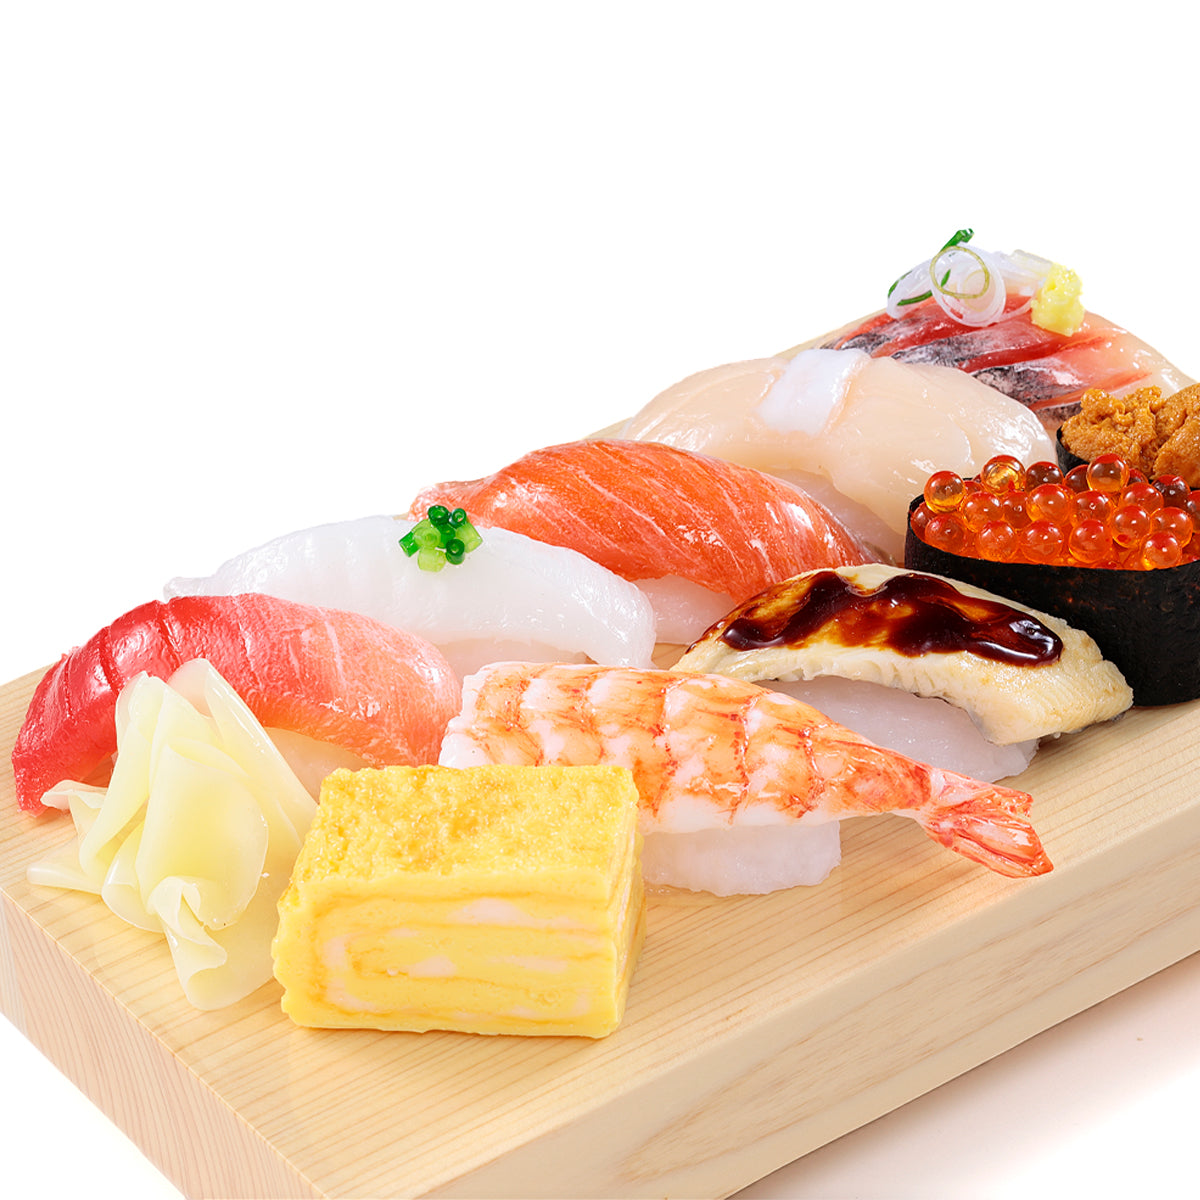 オリジナル食品サンプル「握り寿司」のイメージ画像です。中トロ、イカ、サーモン、ホタテ、アジ、エビ、あなご、イクラ、ウニのお寿司がのっています。